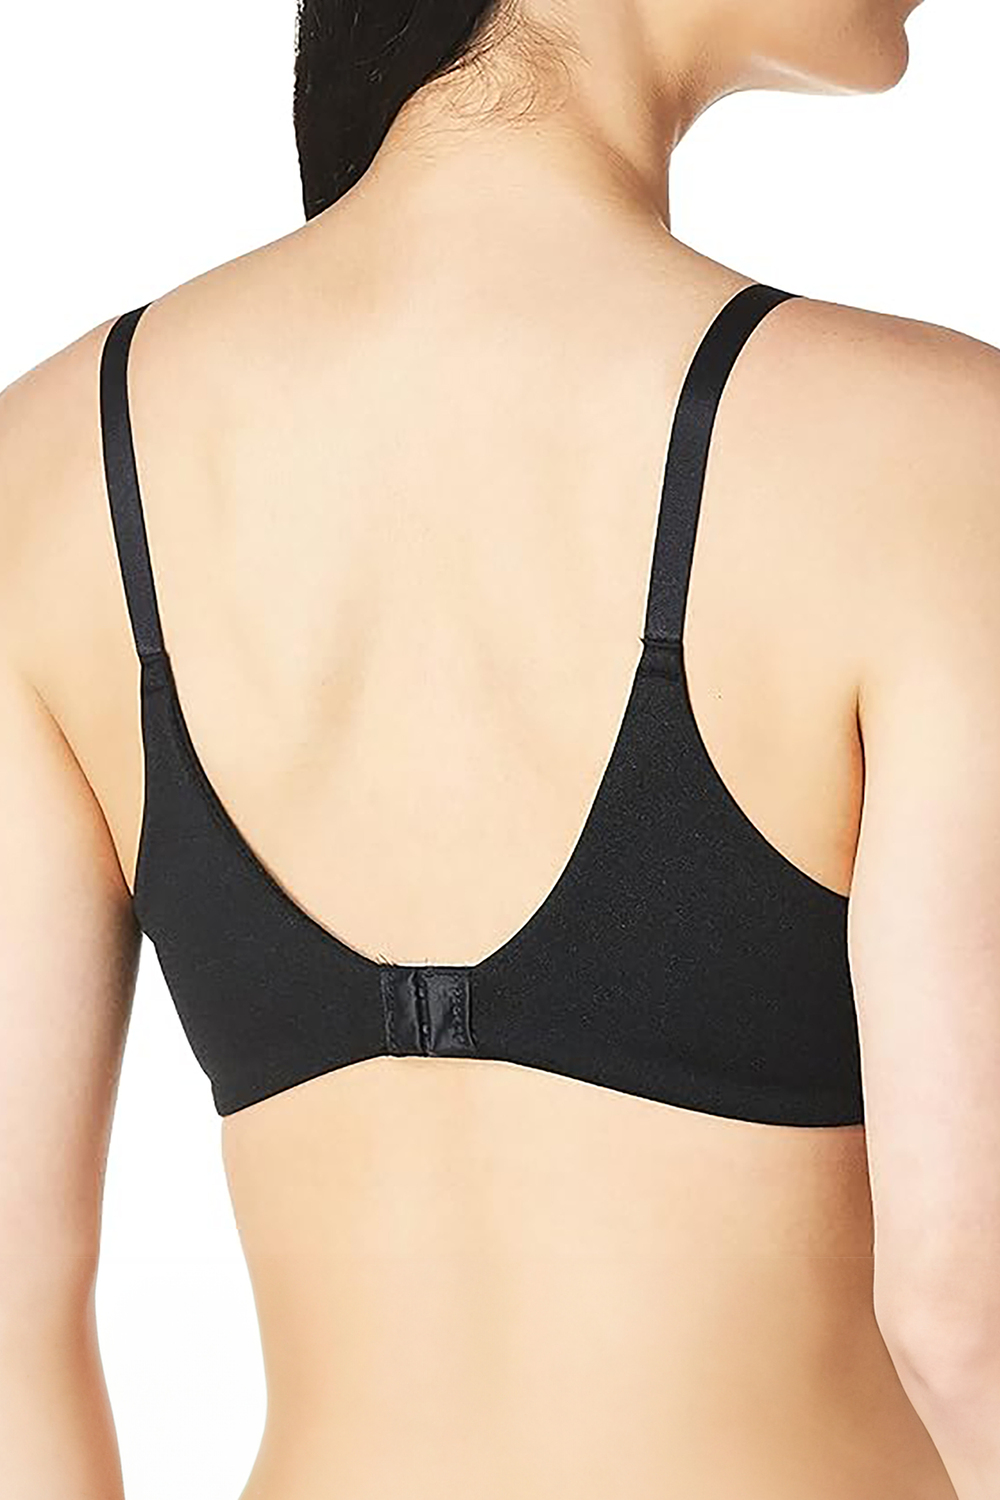 Bargain Hunter: Penneys leak-resistant bra, using a clubcard for savings  beyond Tesco